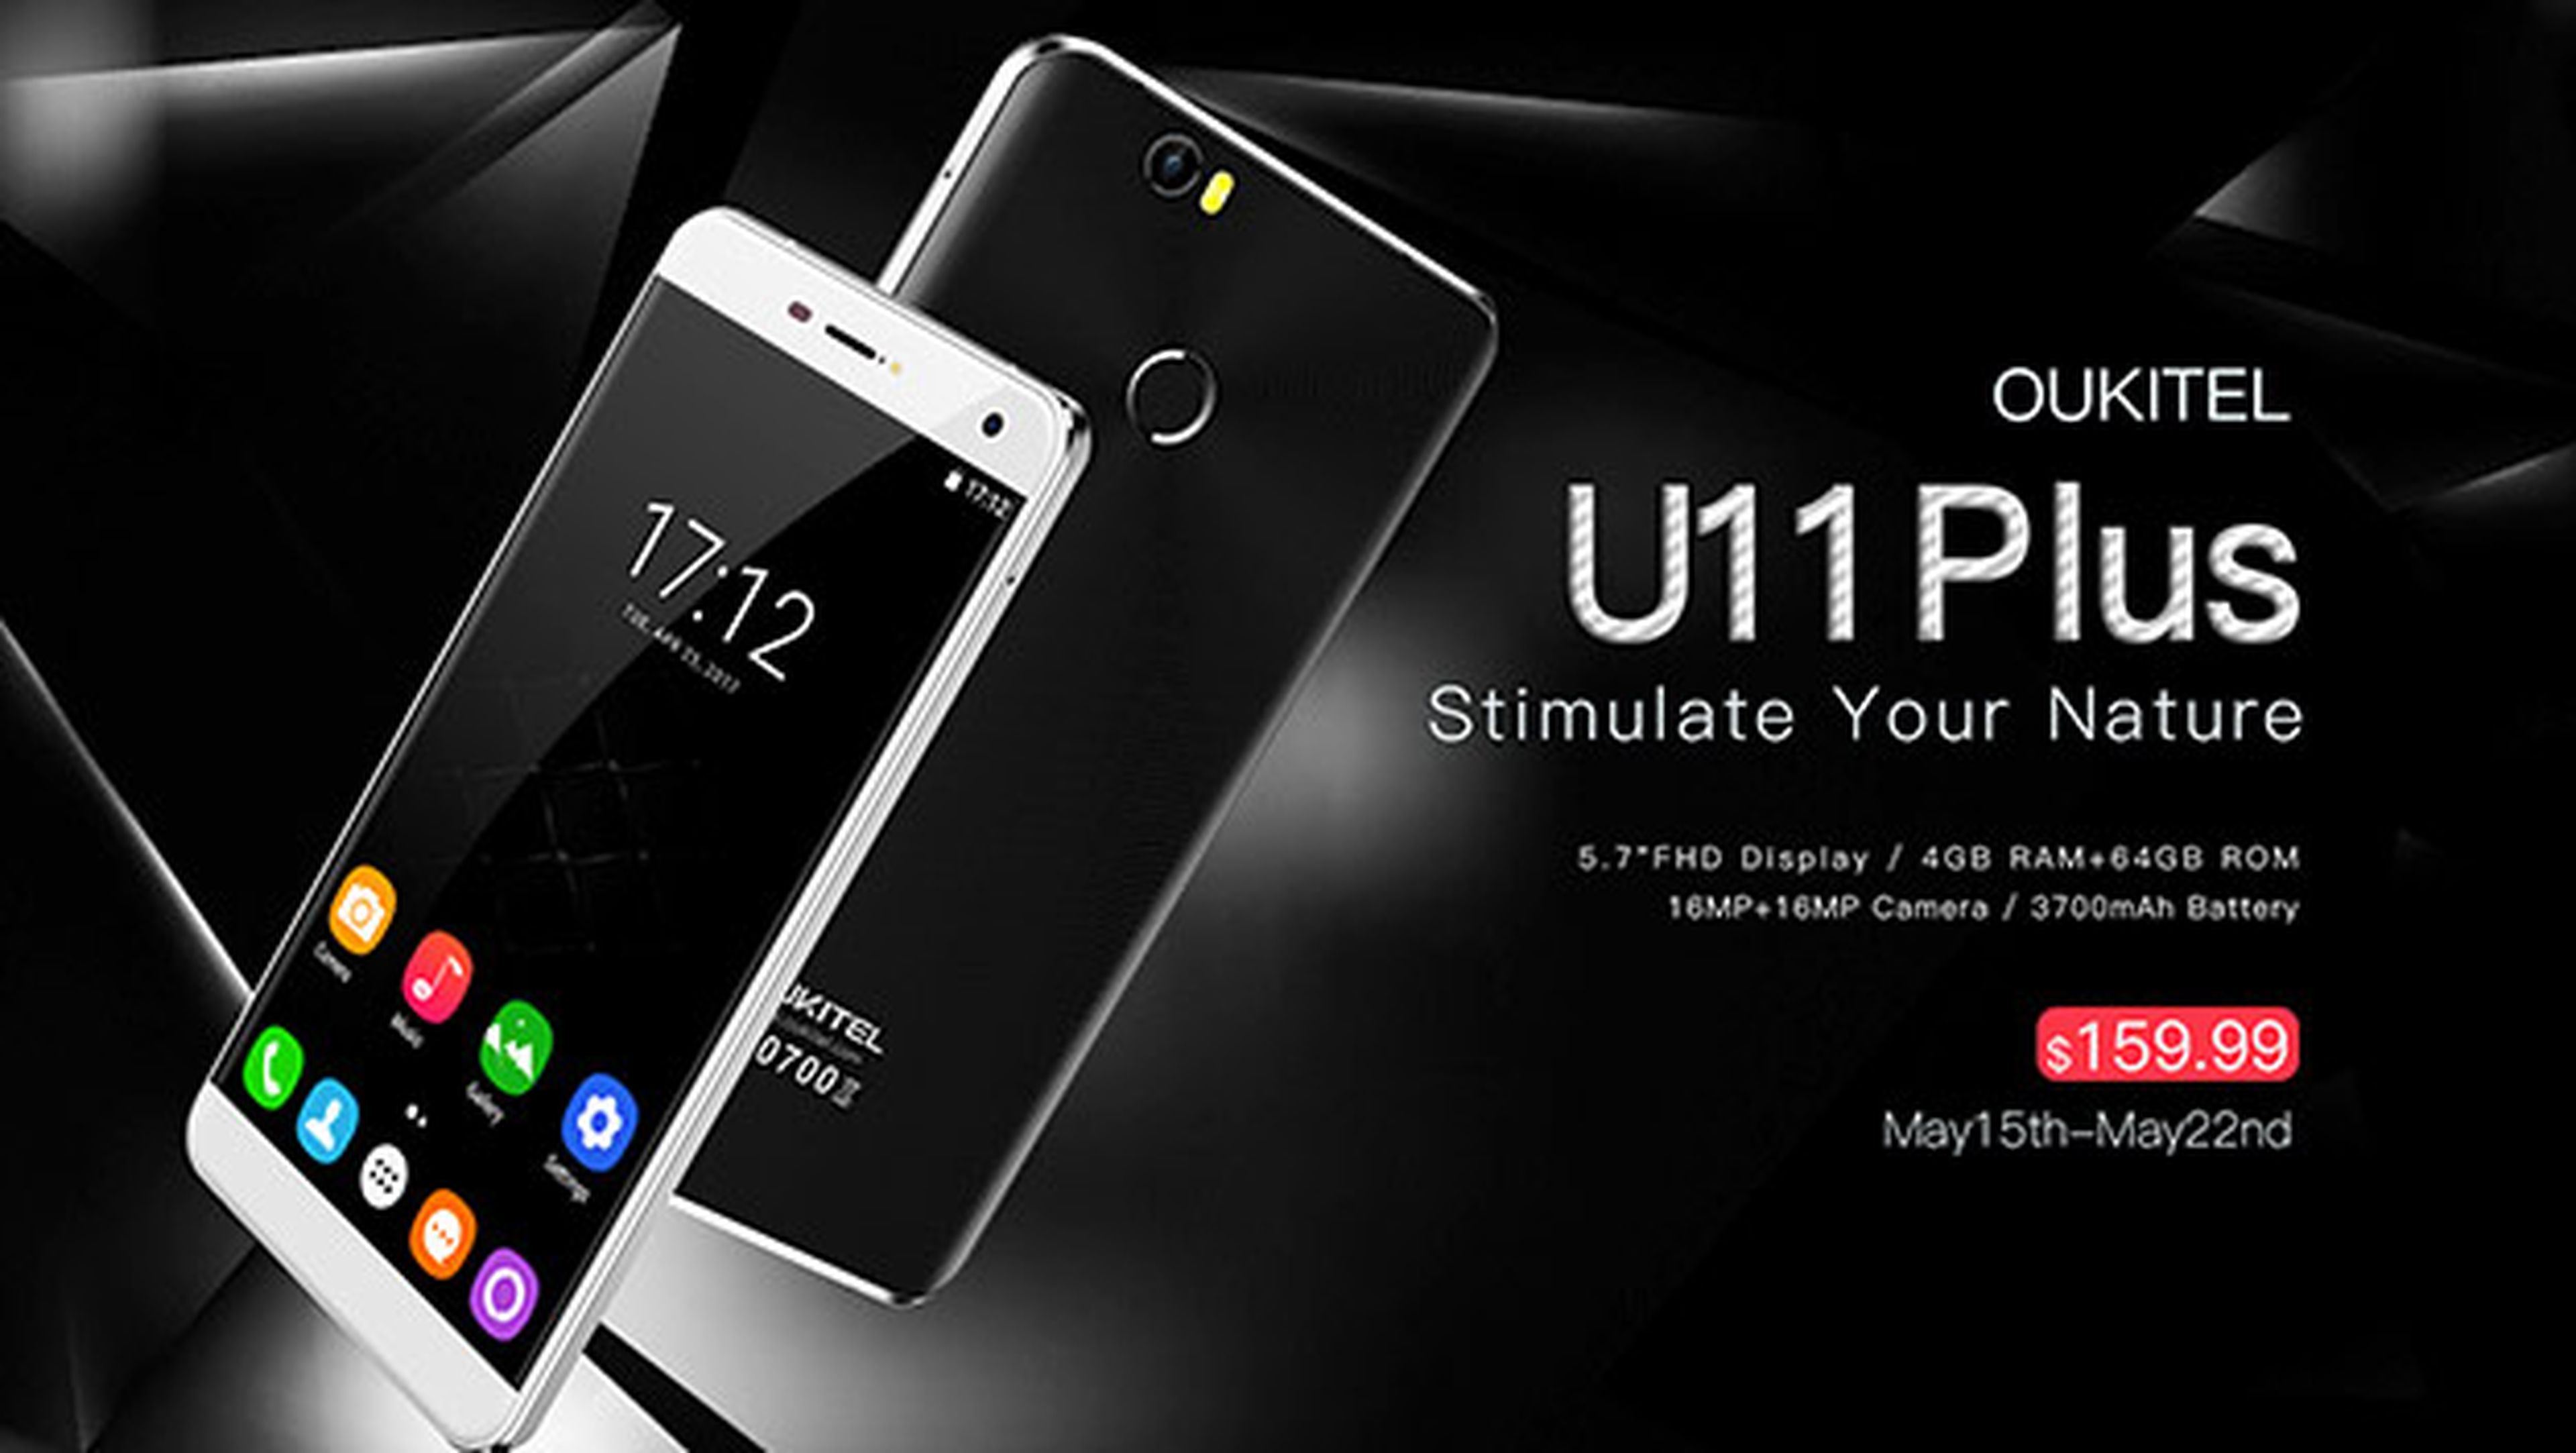 Oukitel U11 Plus destaca su gran pantalla de 5,7 pulgadas